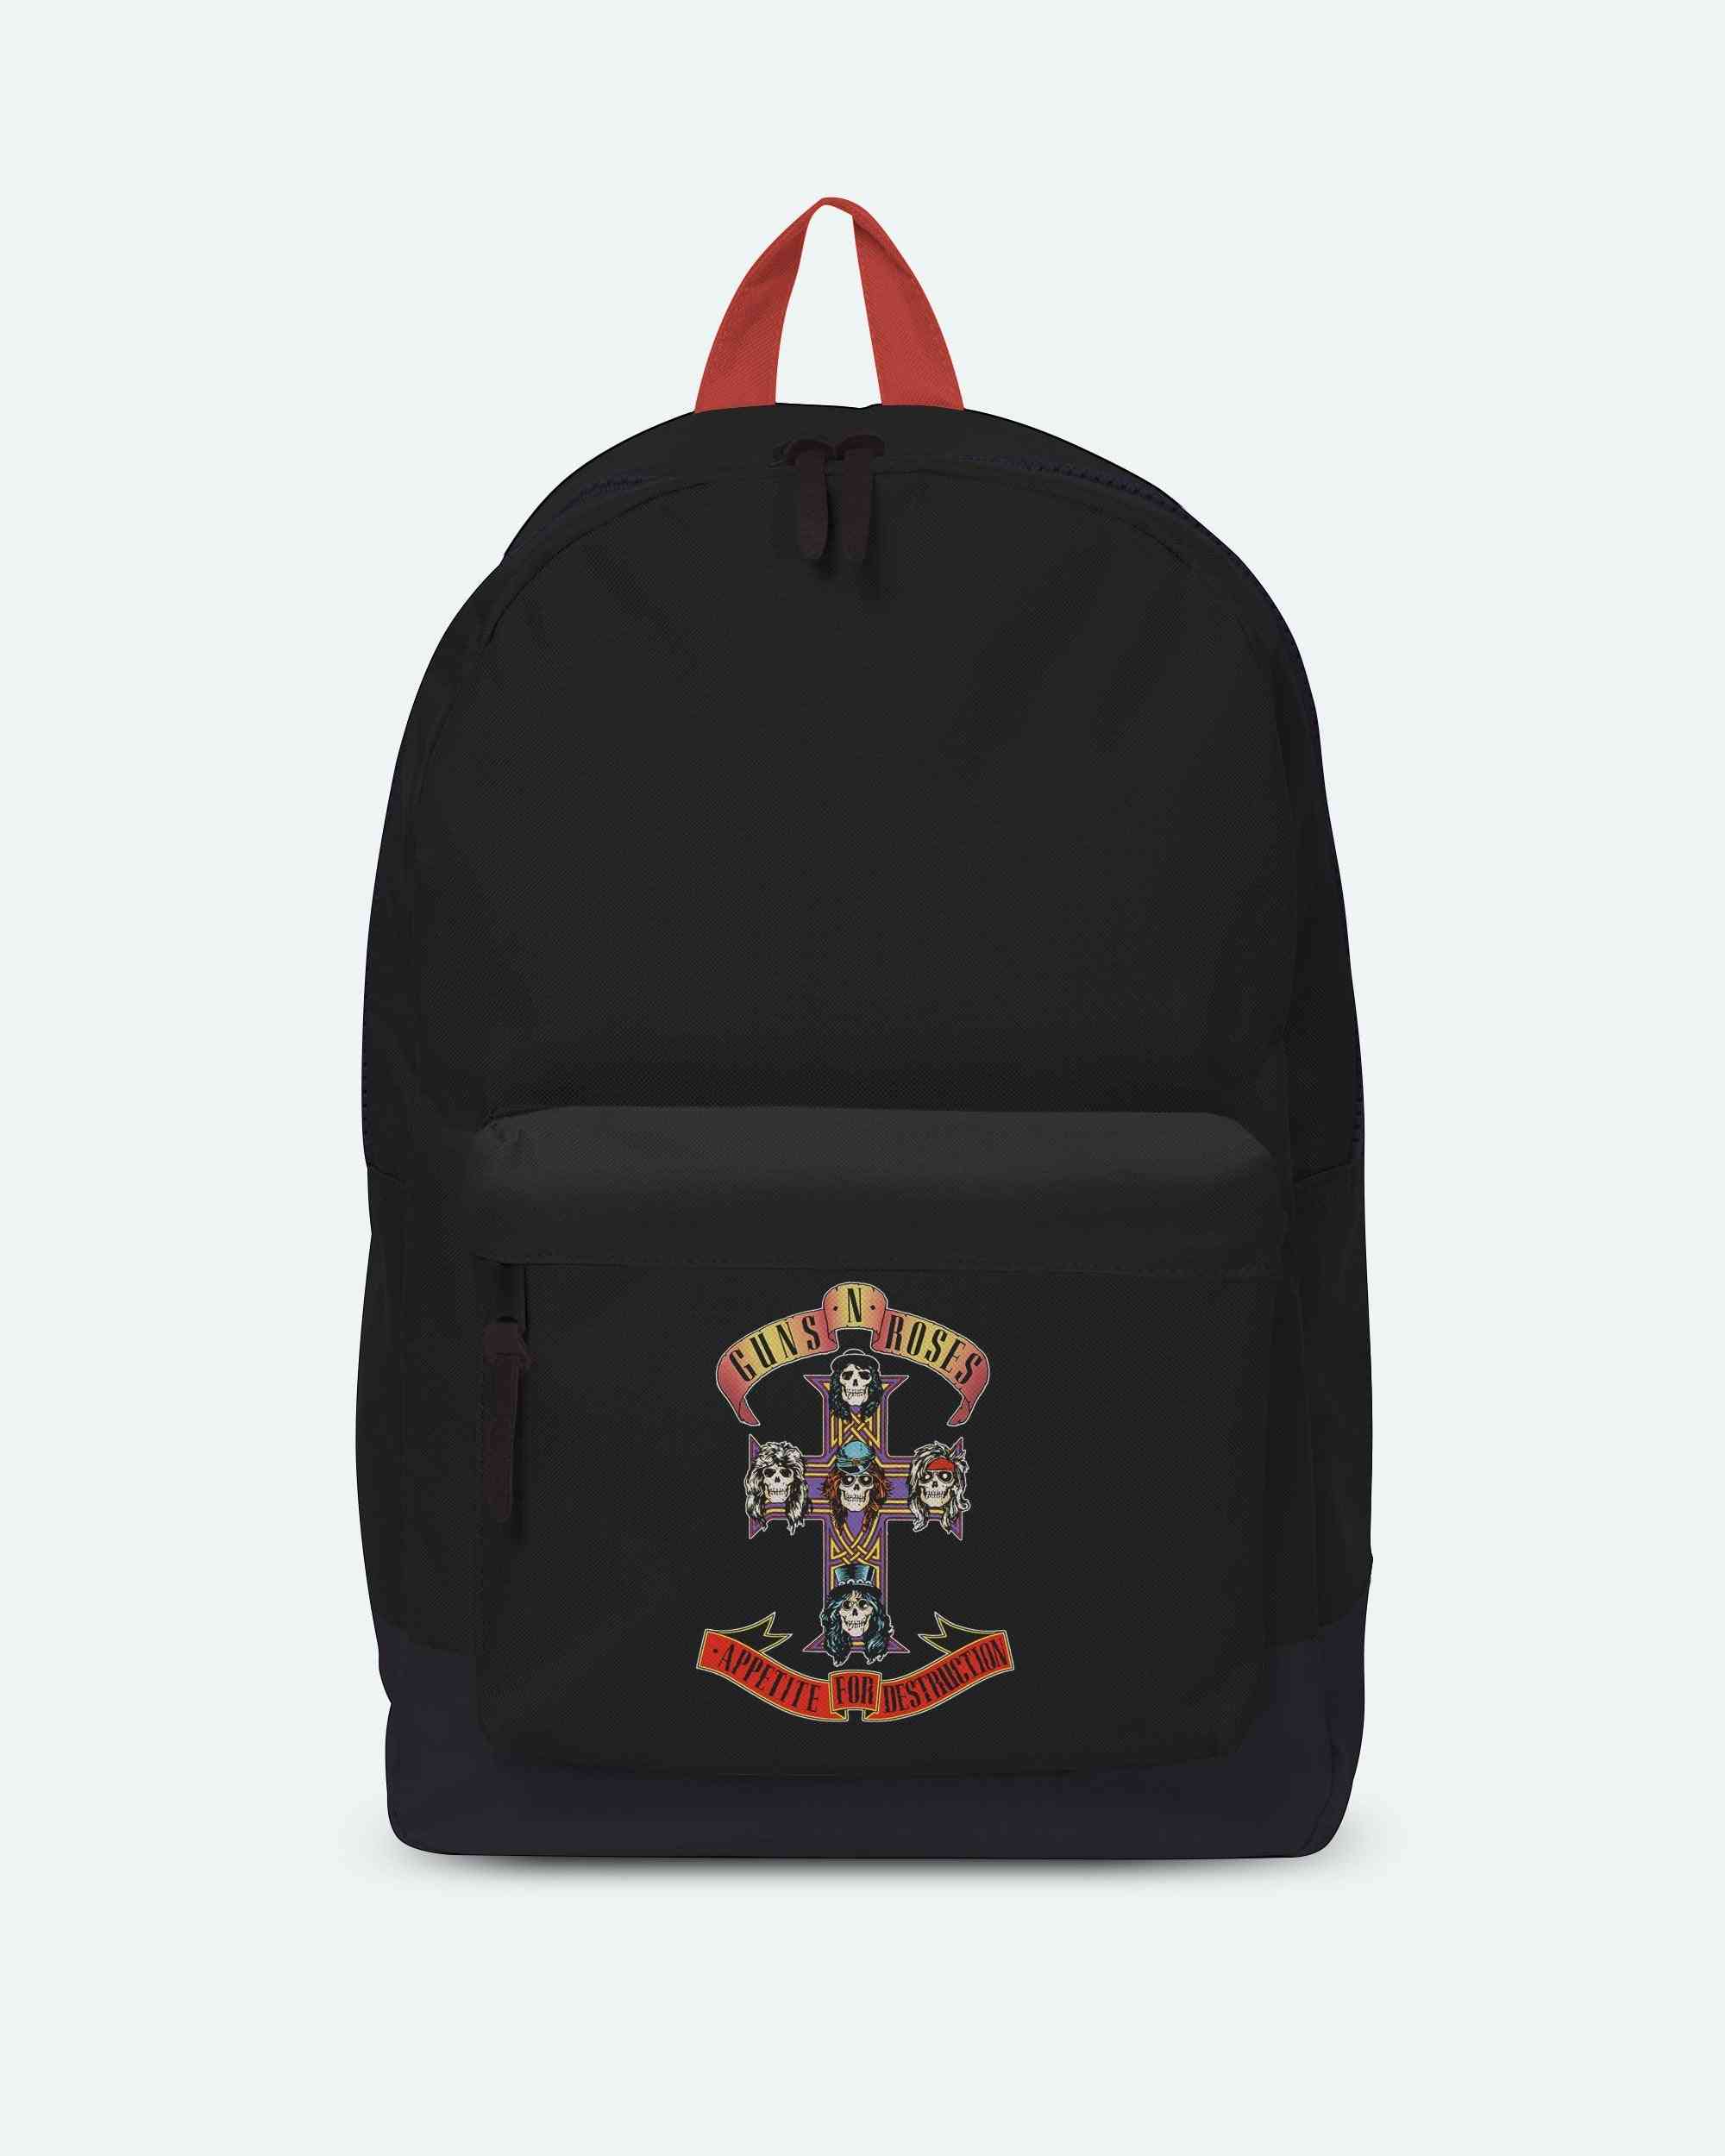 Guns N' Roses Classic Backpacks